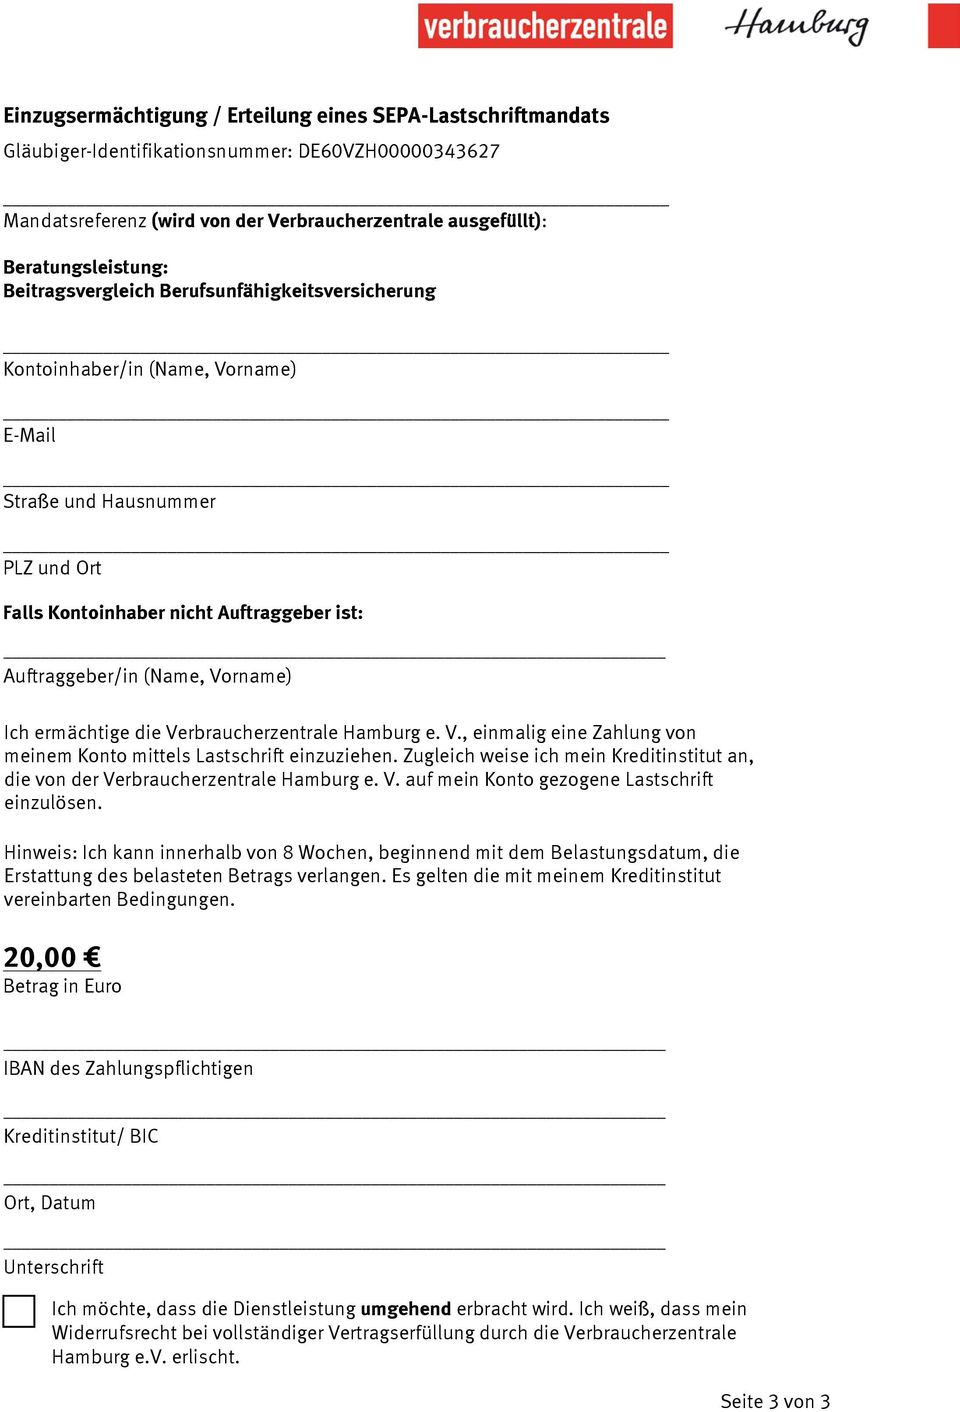 Ich ermächtige die Verbraucherzentrale Hamburg e. V., einmalig eine Zahlung von meinem Konto mittels Lastschrift einzuziehen.